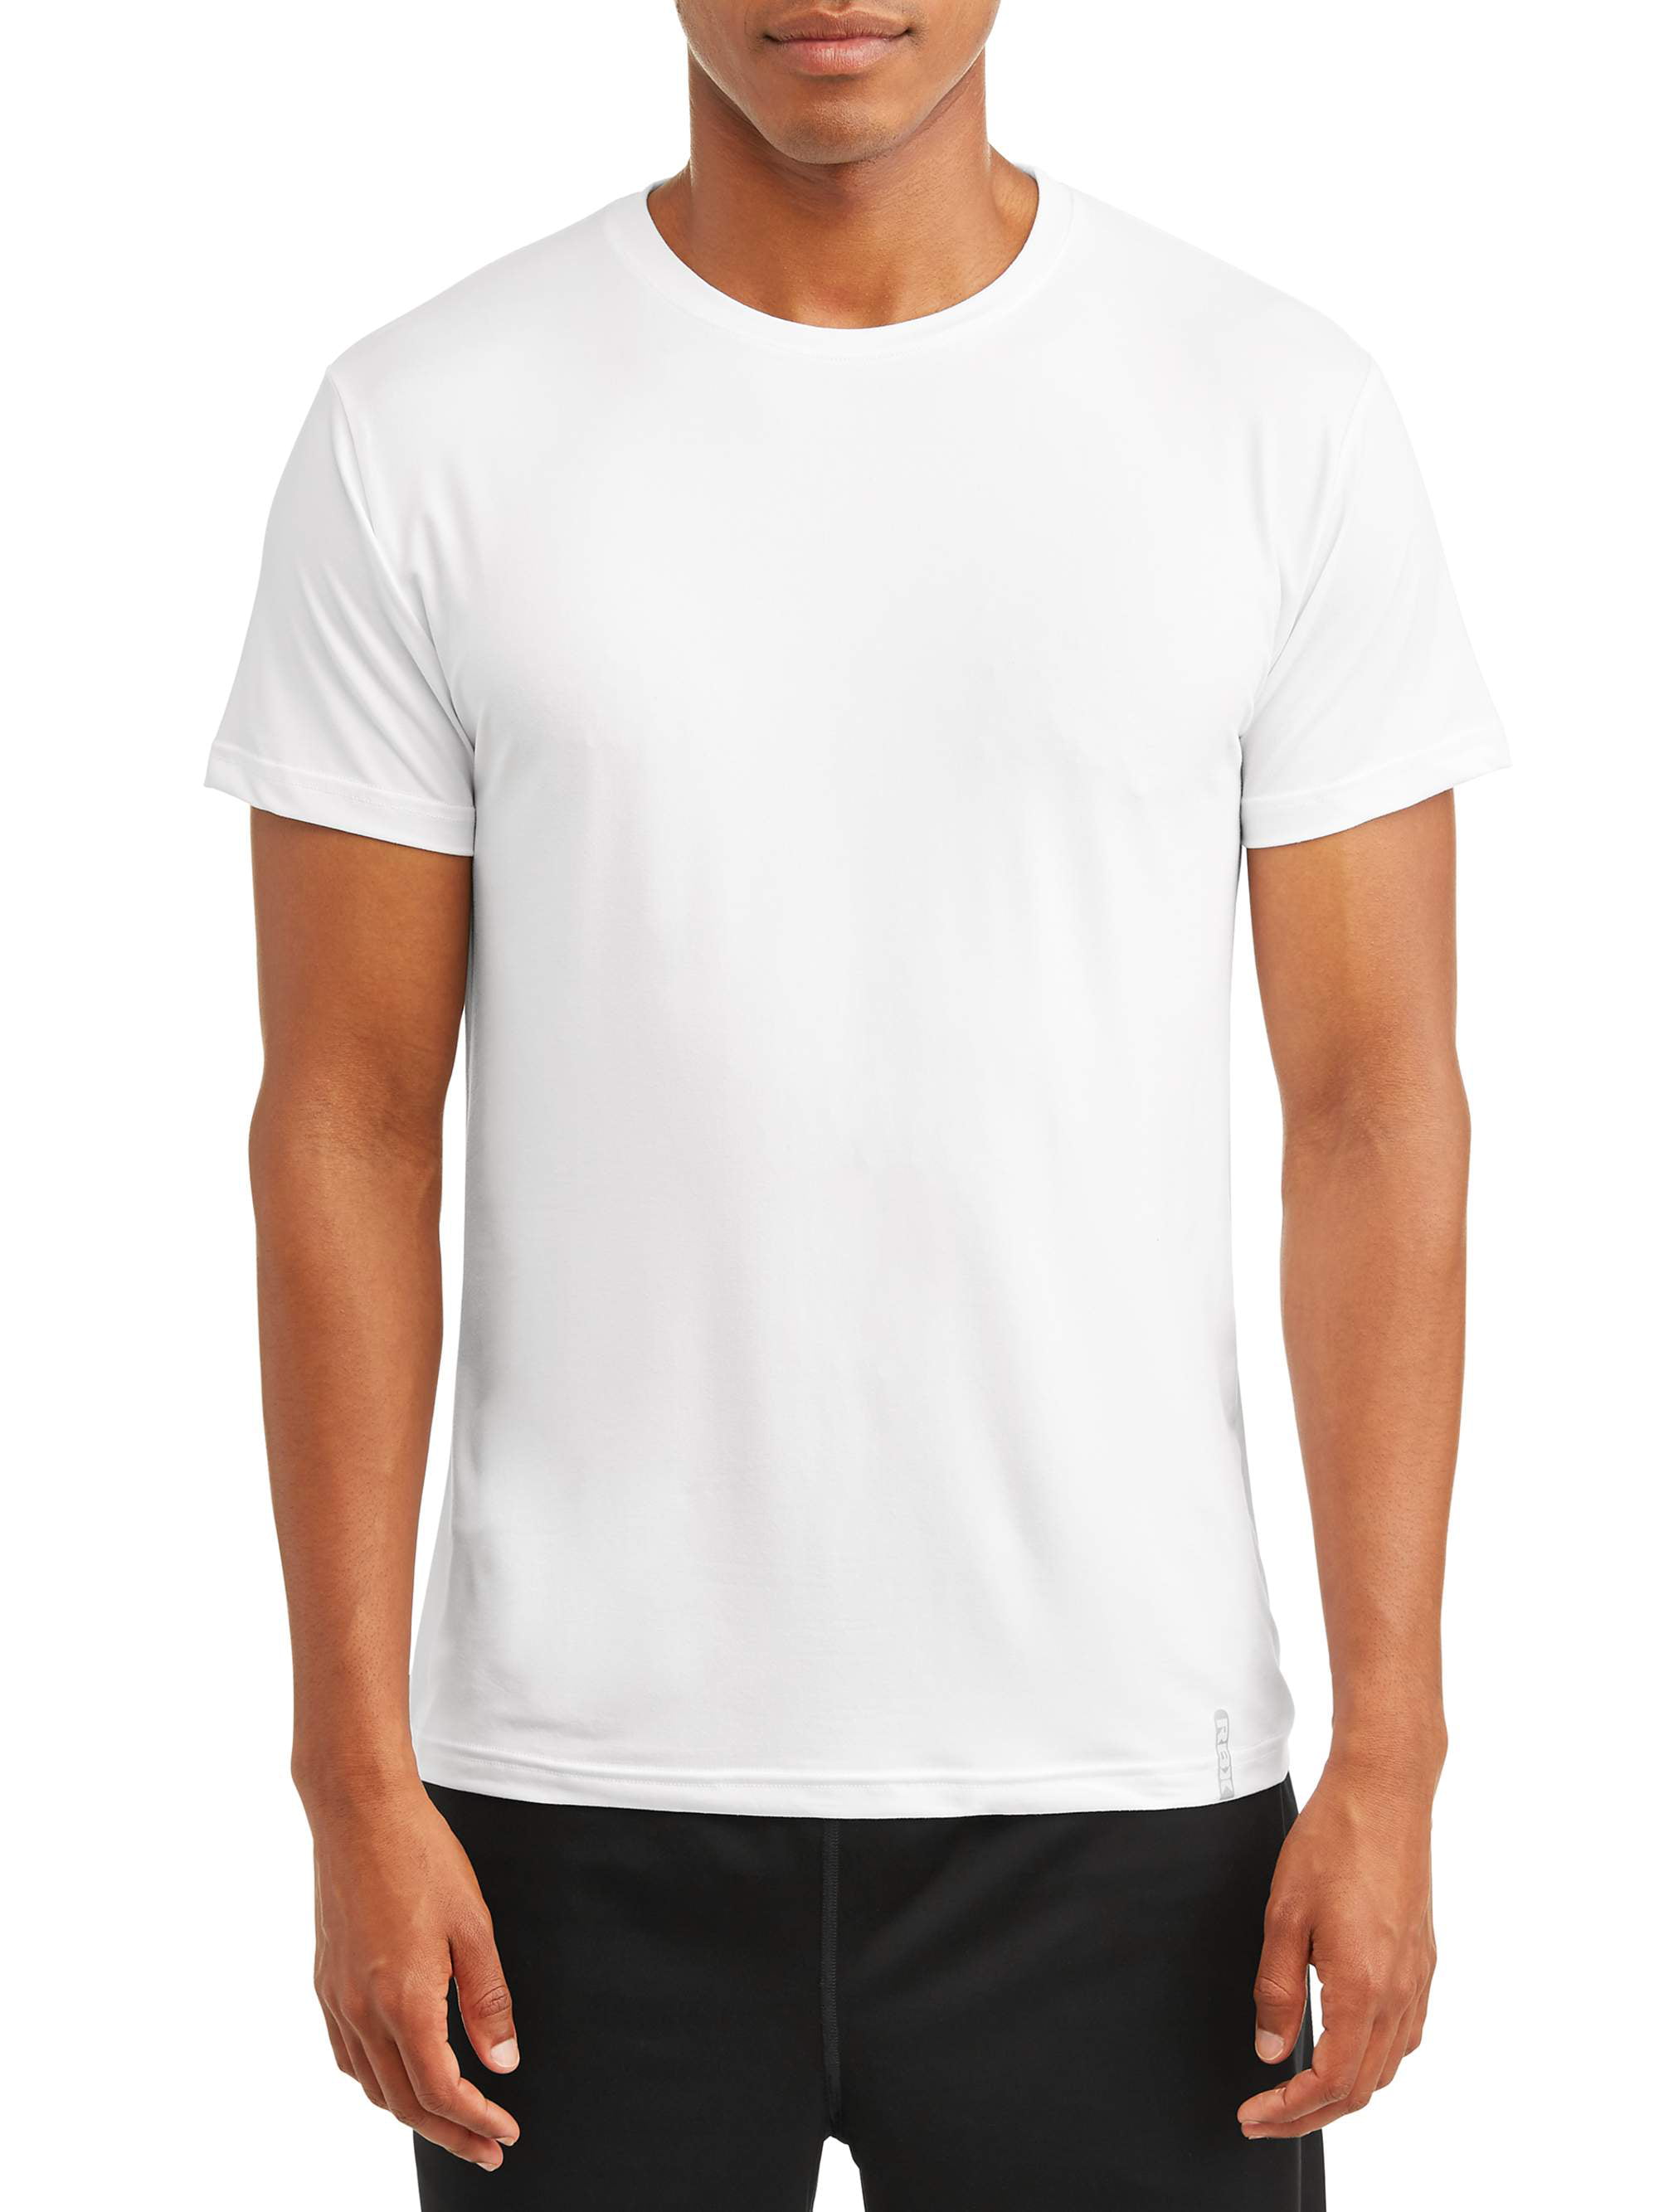 RBX Men's Ultra Soft Short-Sleeve Crew Neck T-Shirt - Walmart.com